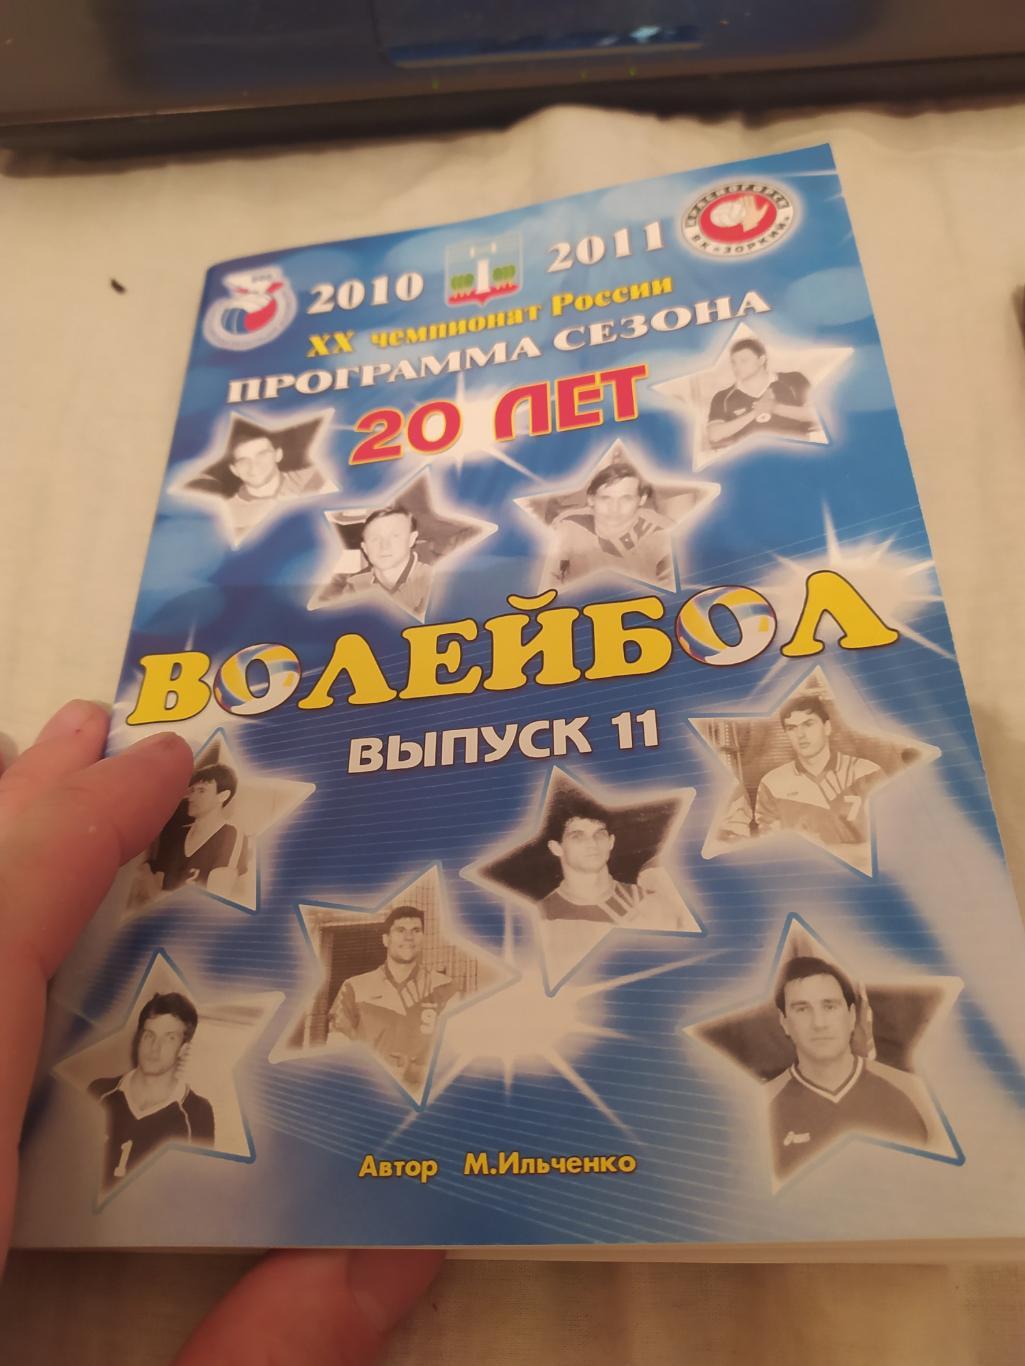 (дм) 2010 программа сезона красногорск